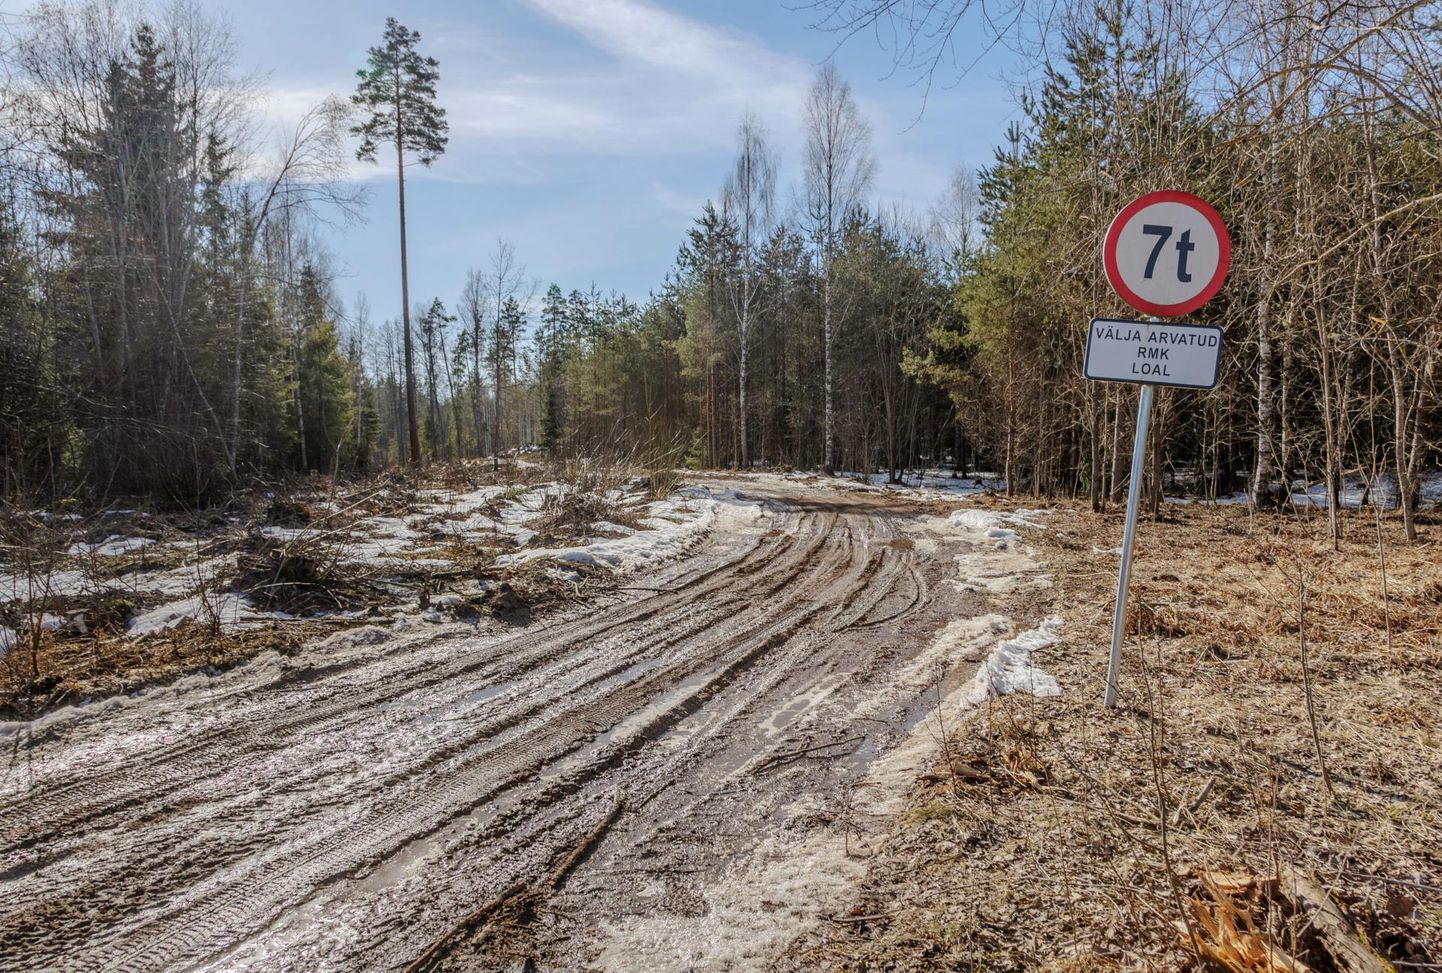 Valga vallas Kaku–Mürgi–Leetuse teega ristuva väiksema metsatee ette on RMK pannud koguni enam kui 7-tonniste sõidukite liikumist keelava märgi.